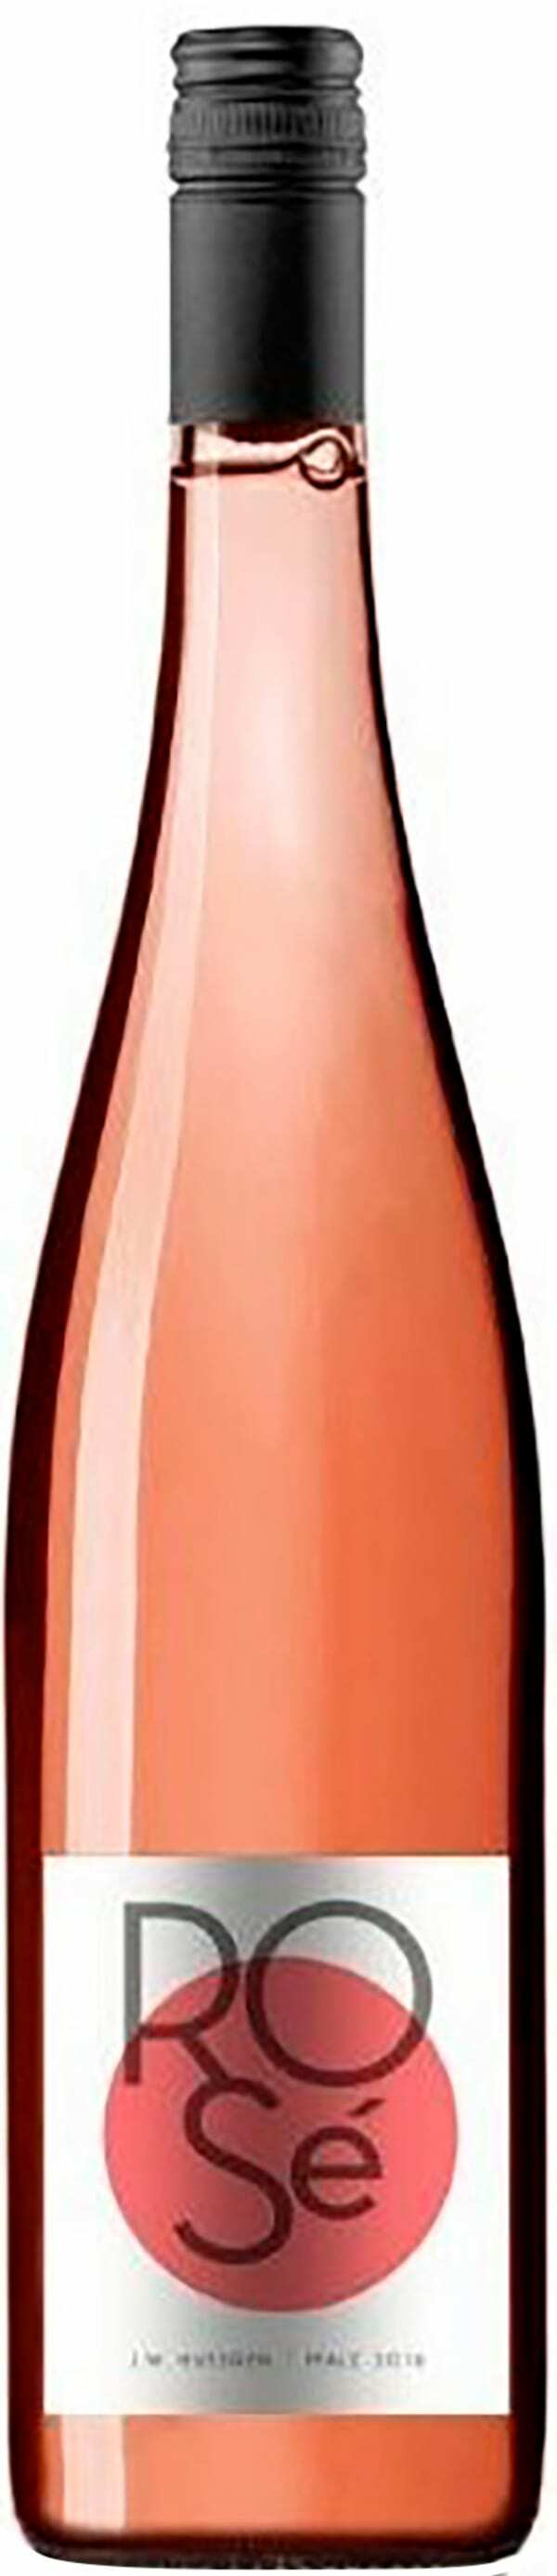 J.W. Huesgen Pinot Noir Rosé 2018